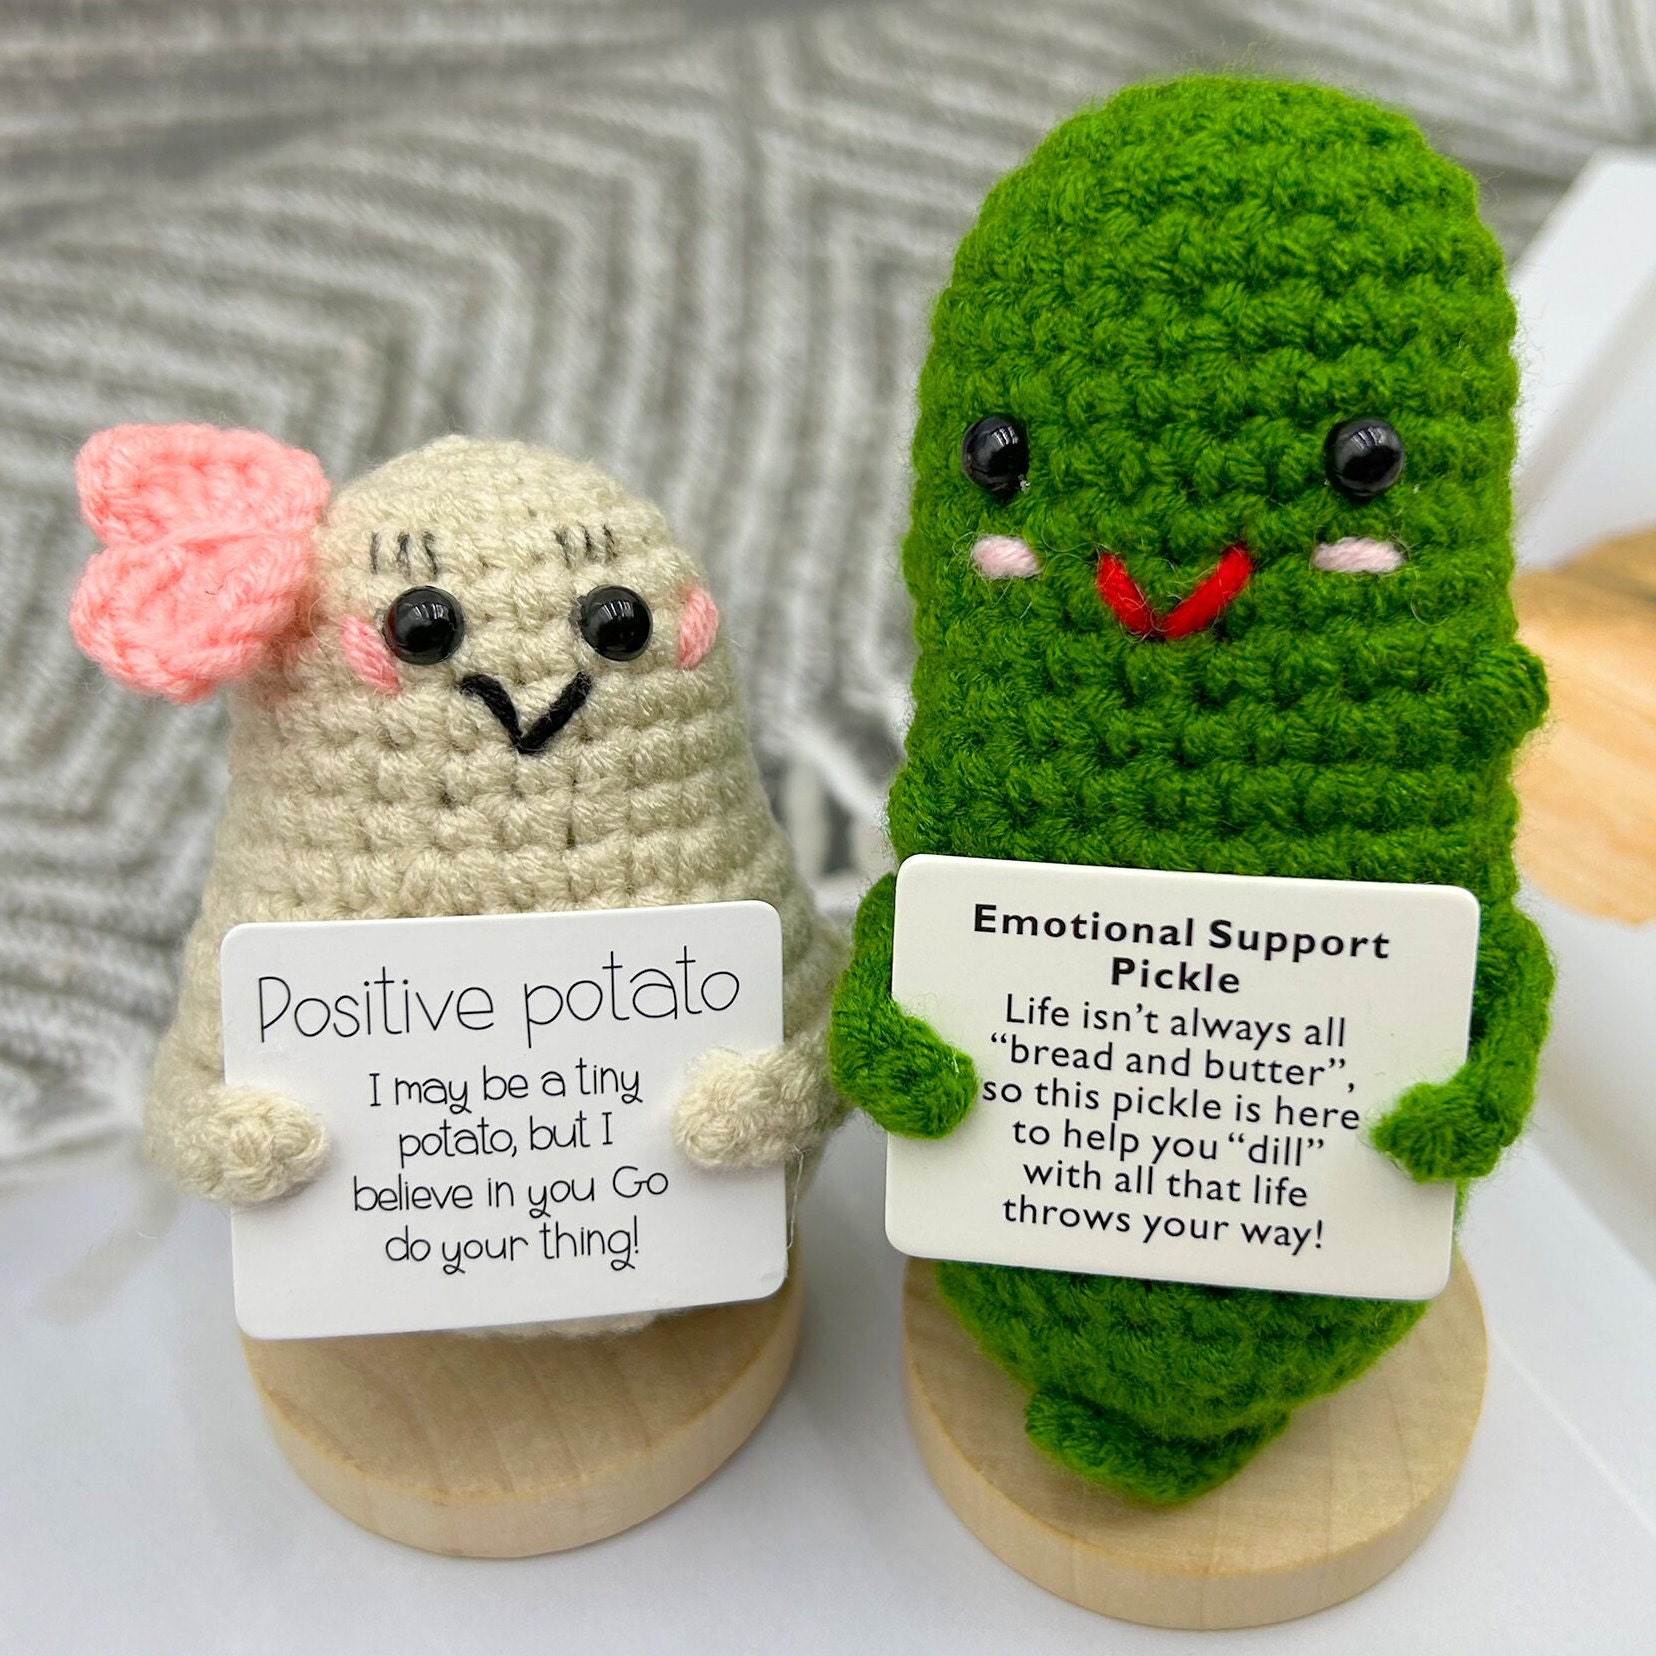 Cornichon de soutien émotionnel, mini poupée de cornichon tricotée avec  carte positive, cadeaux de bonne chance, cadeaux positifs amusants, mignon